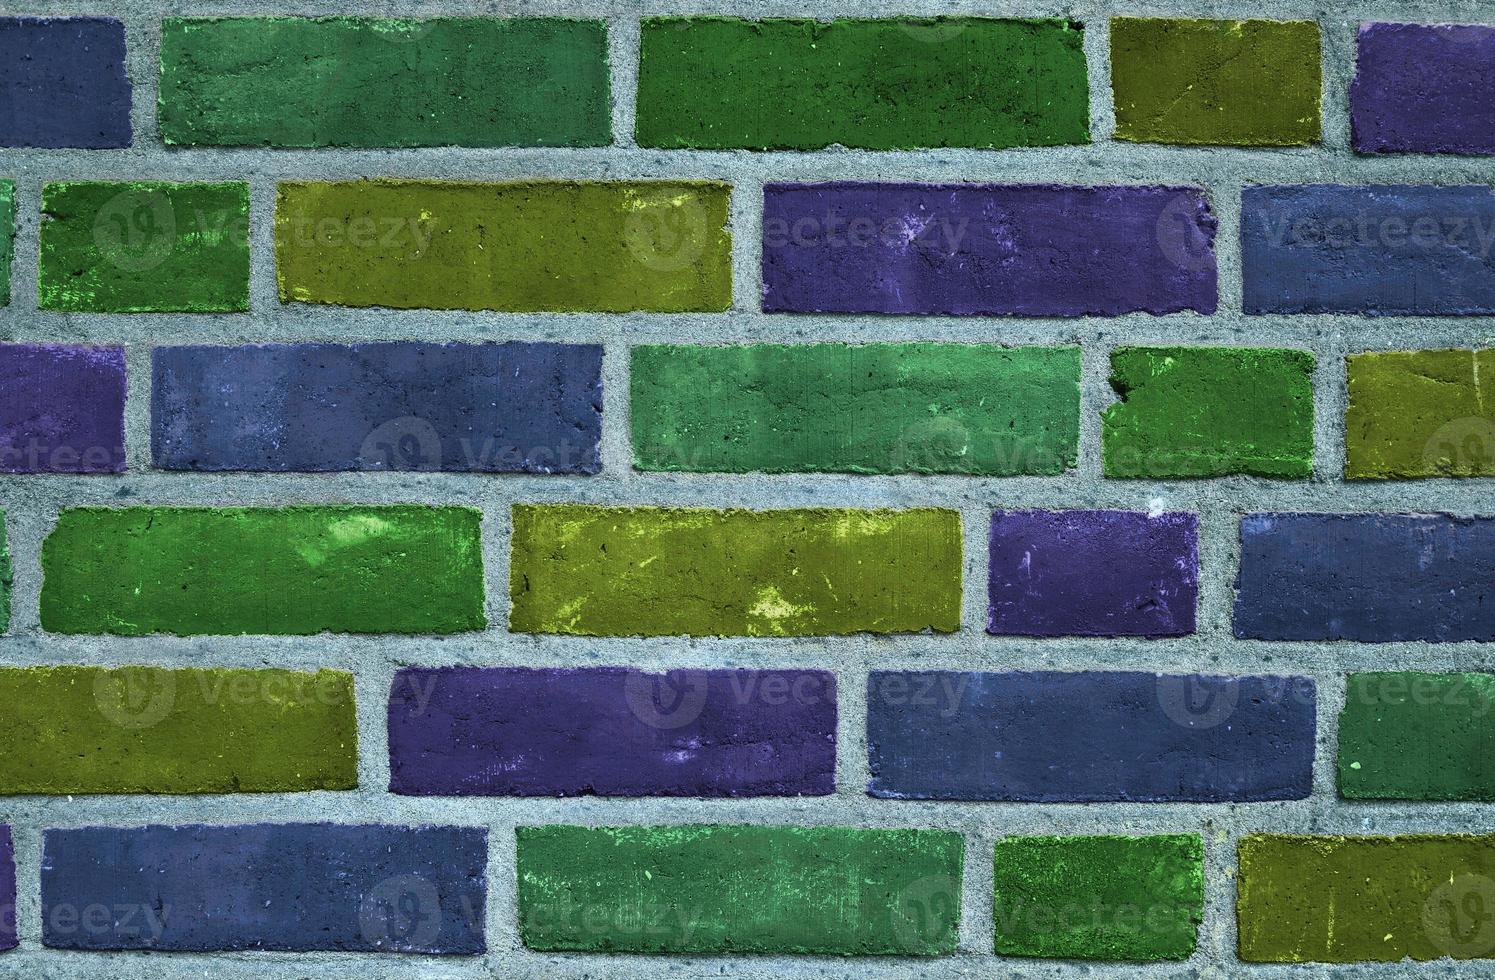 belos tijolos coloridos arco-íris em uma textura de parede velha e resistida foto